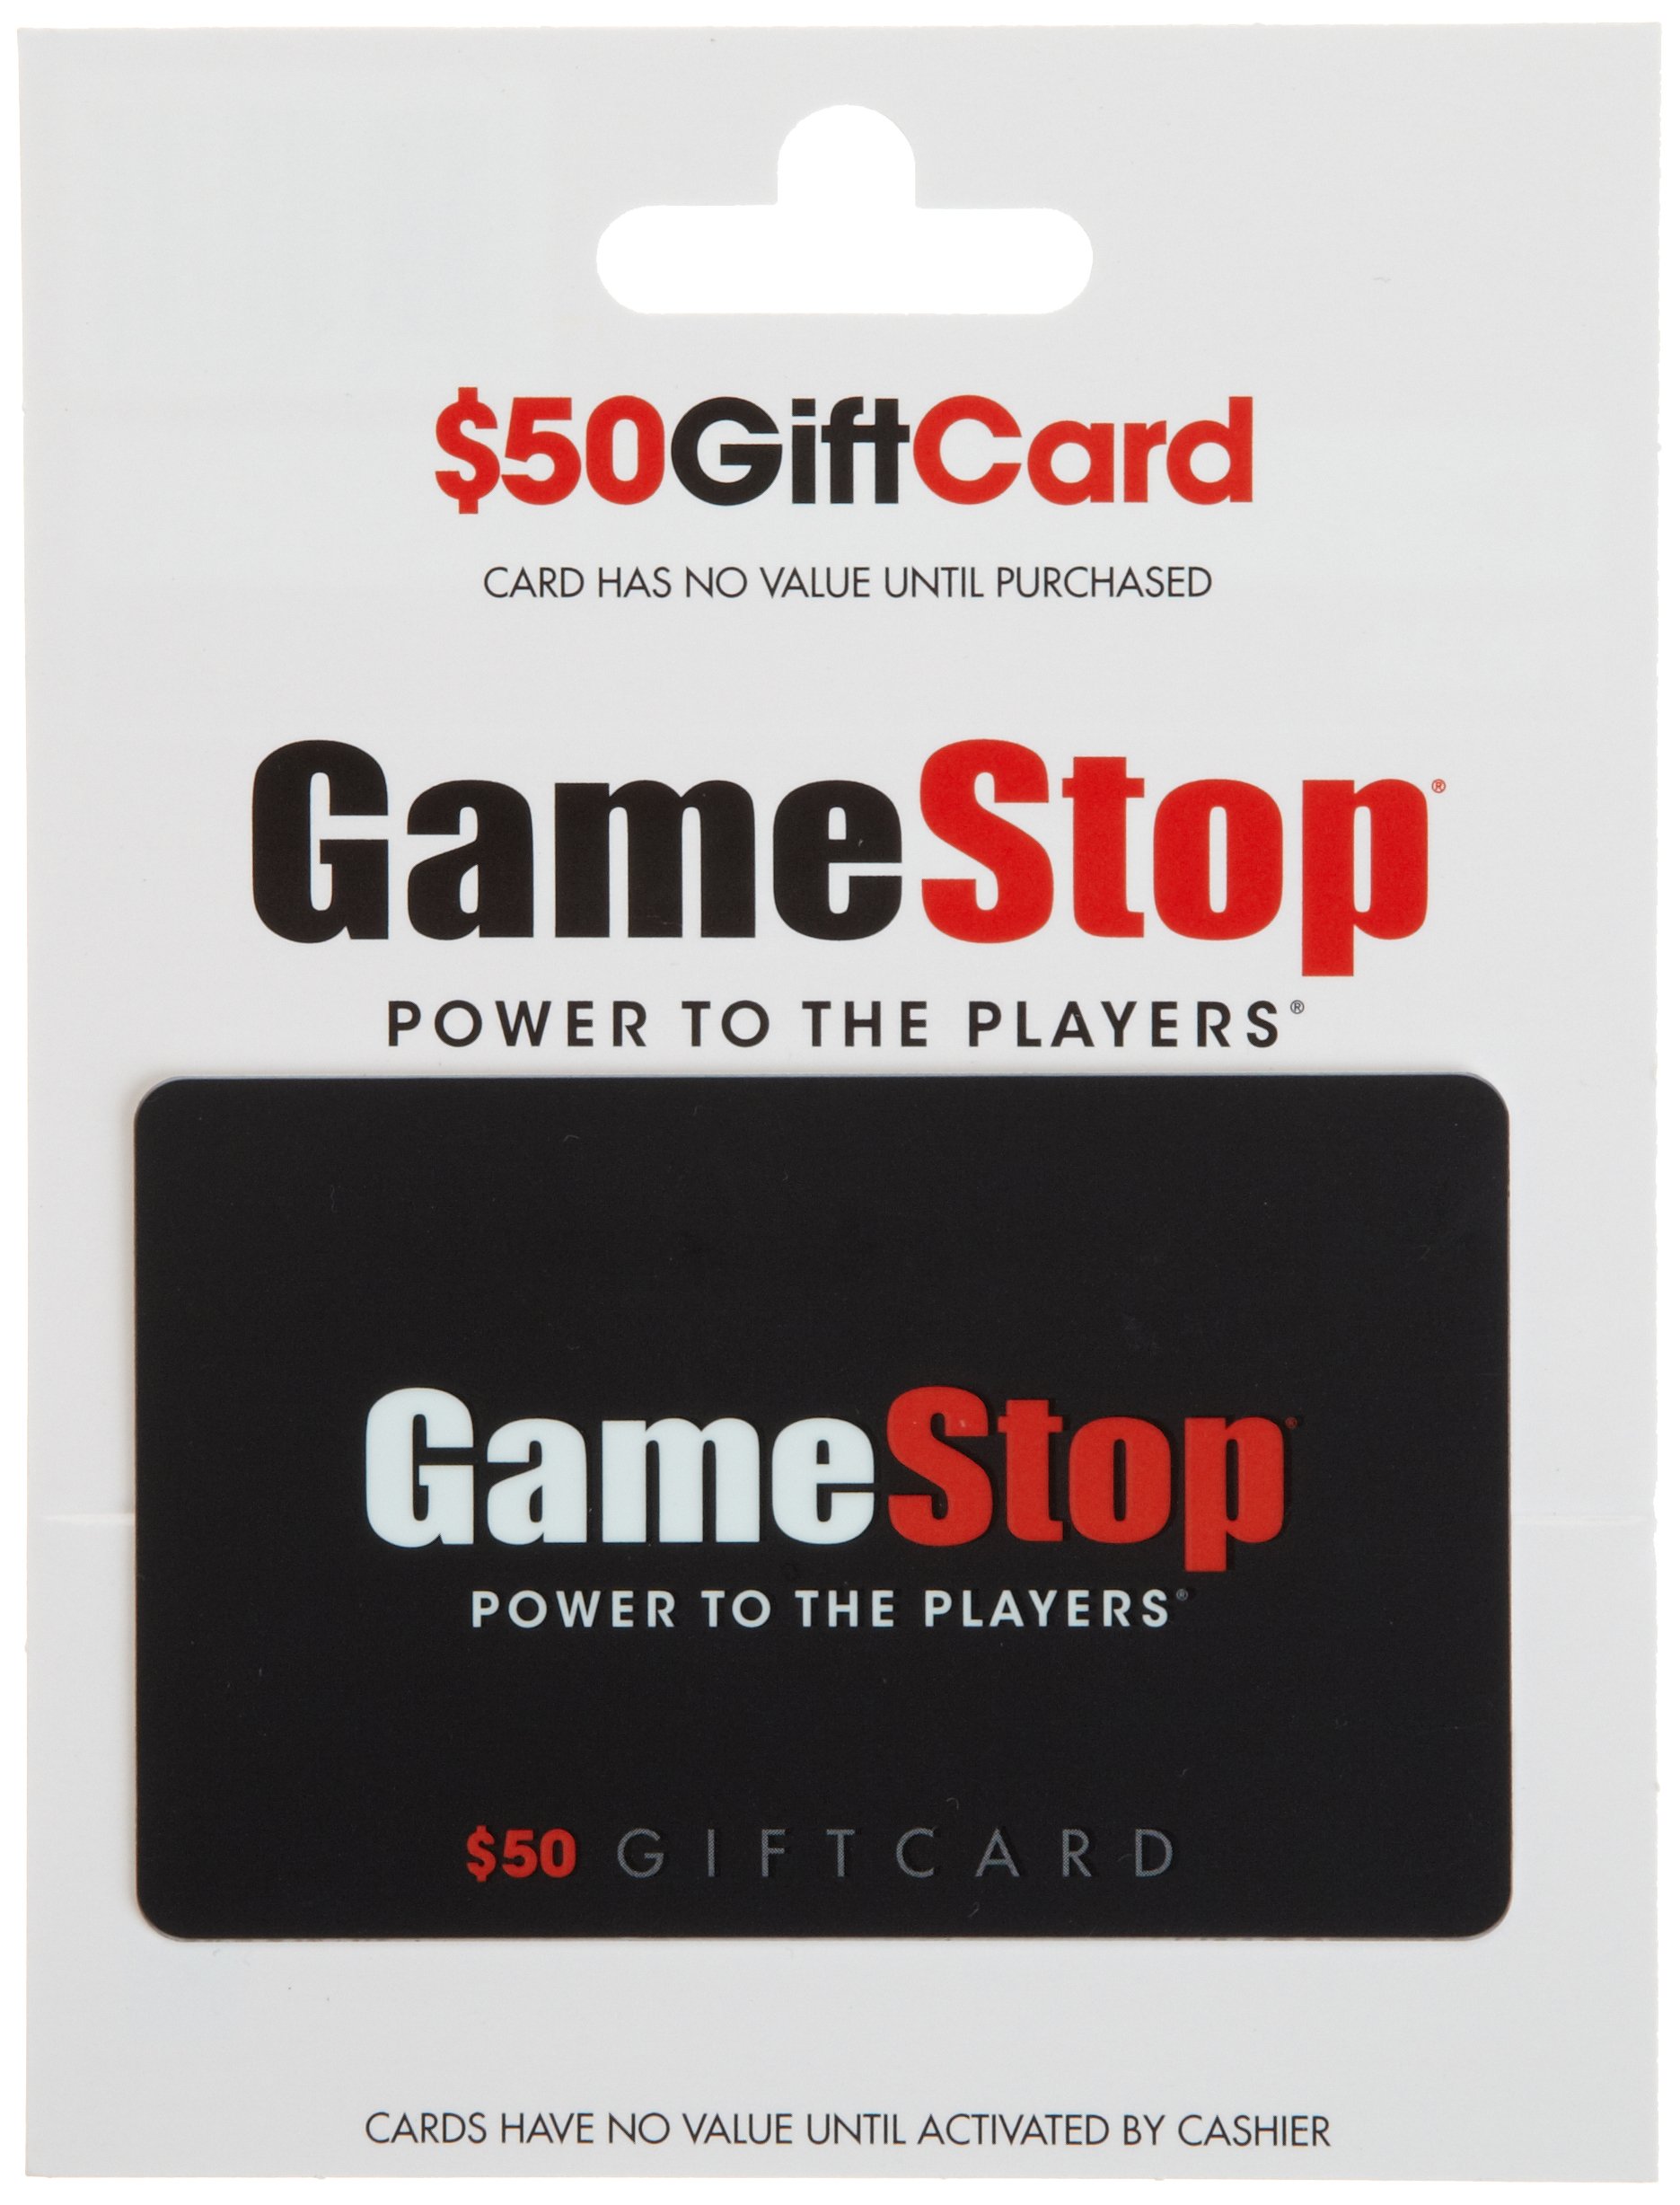 Online Surveys for GameStop Gift Card | Pawns